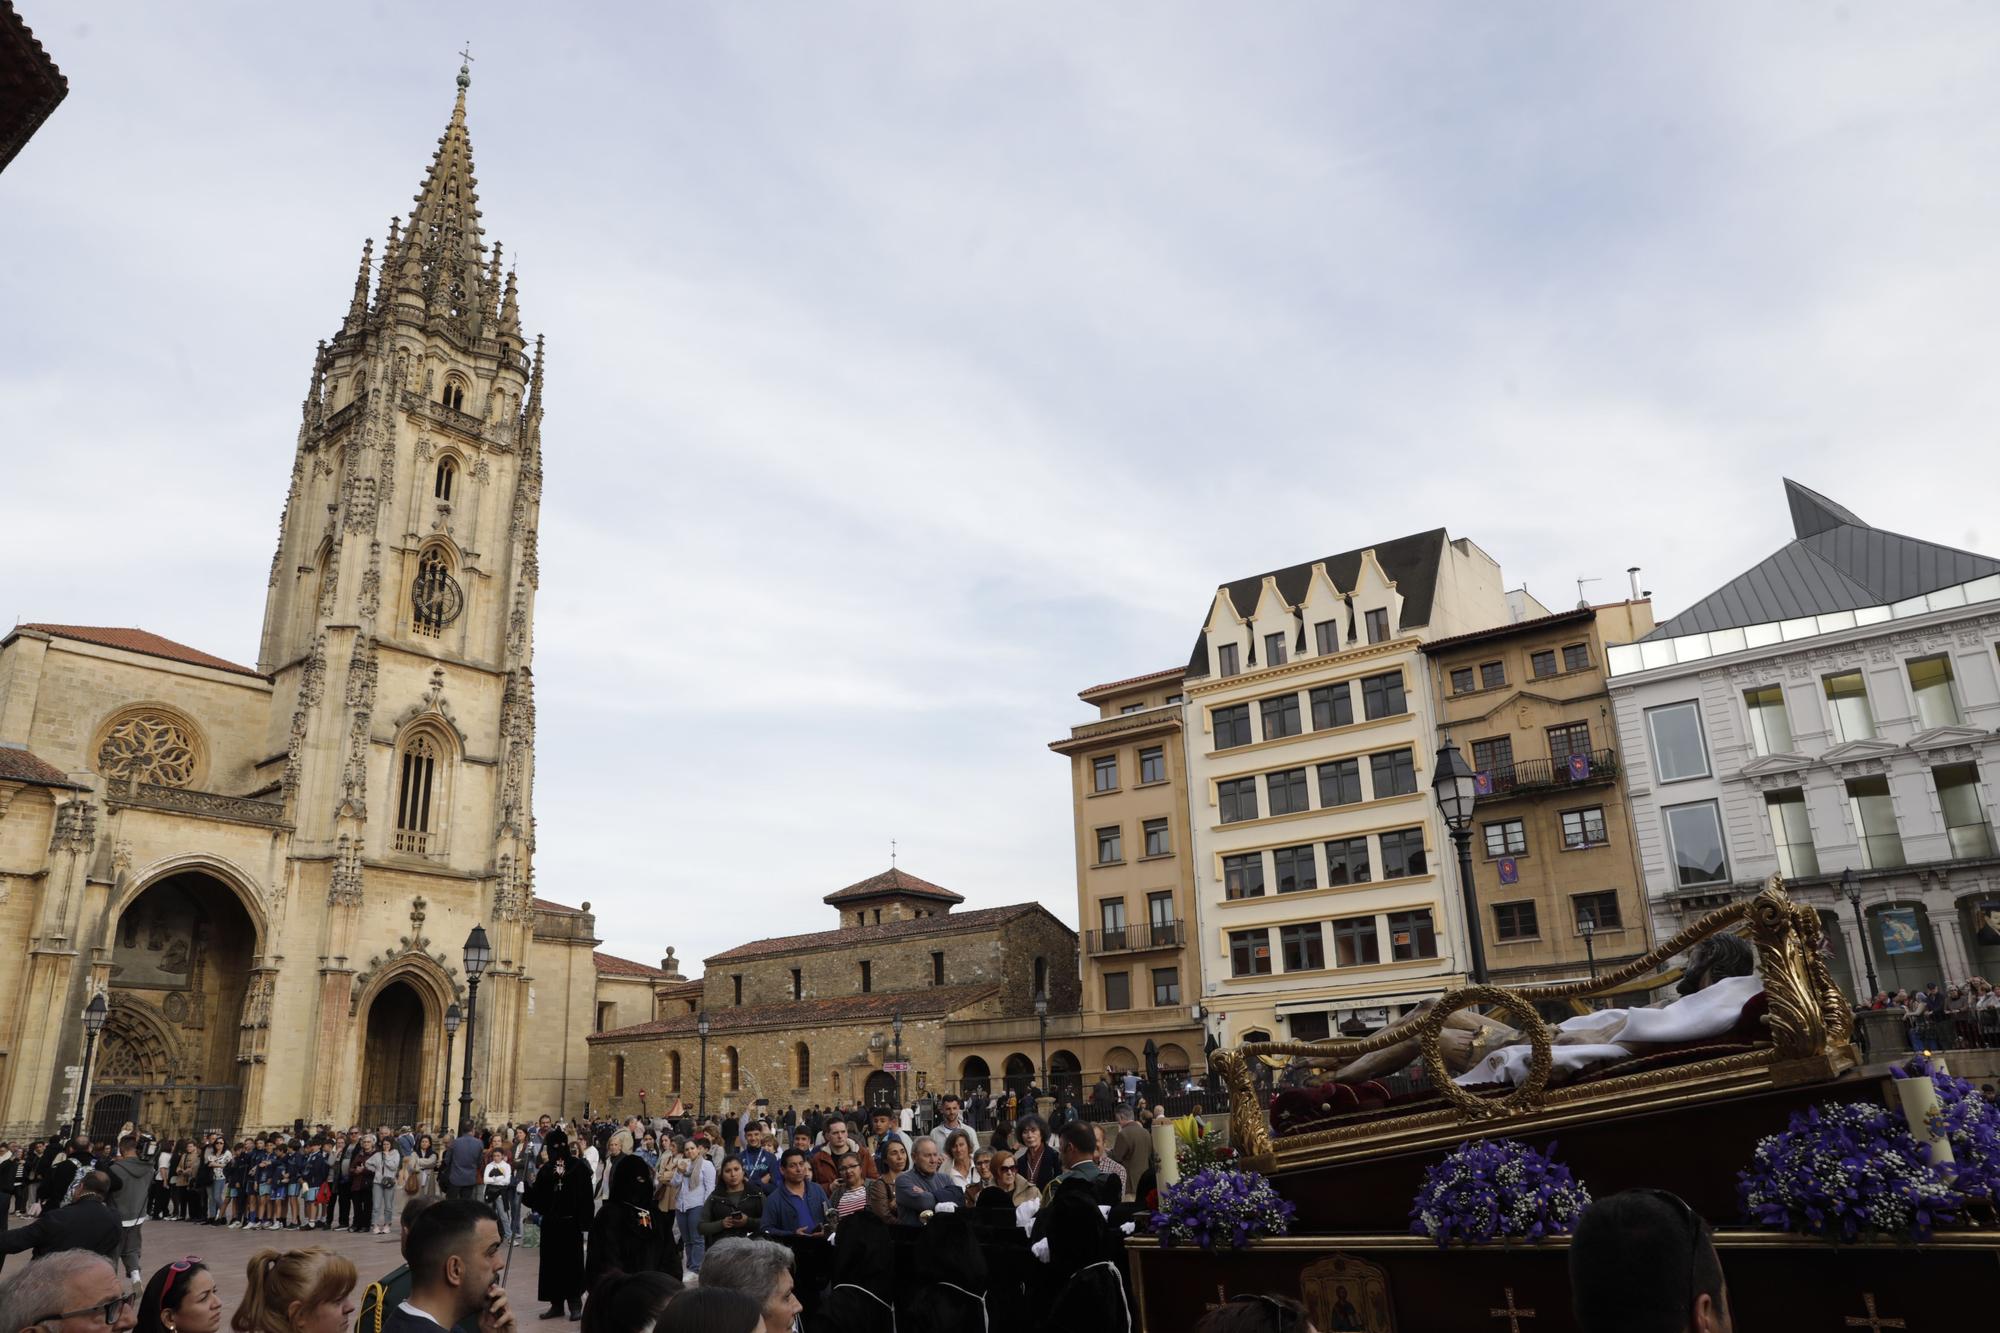 La procesión intergeneracional del Santo Entierro emociona Oviedo